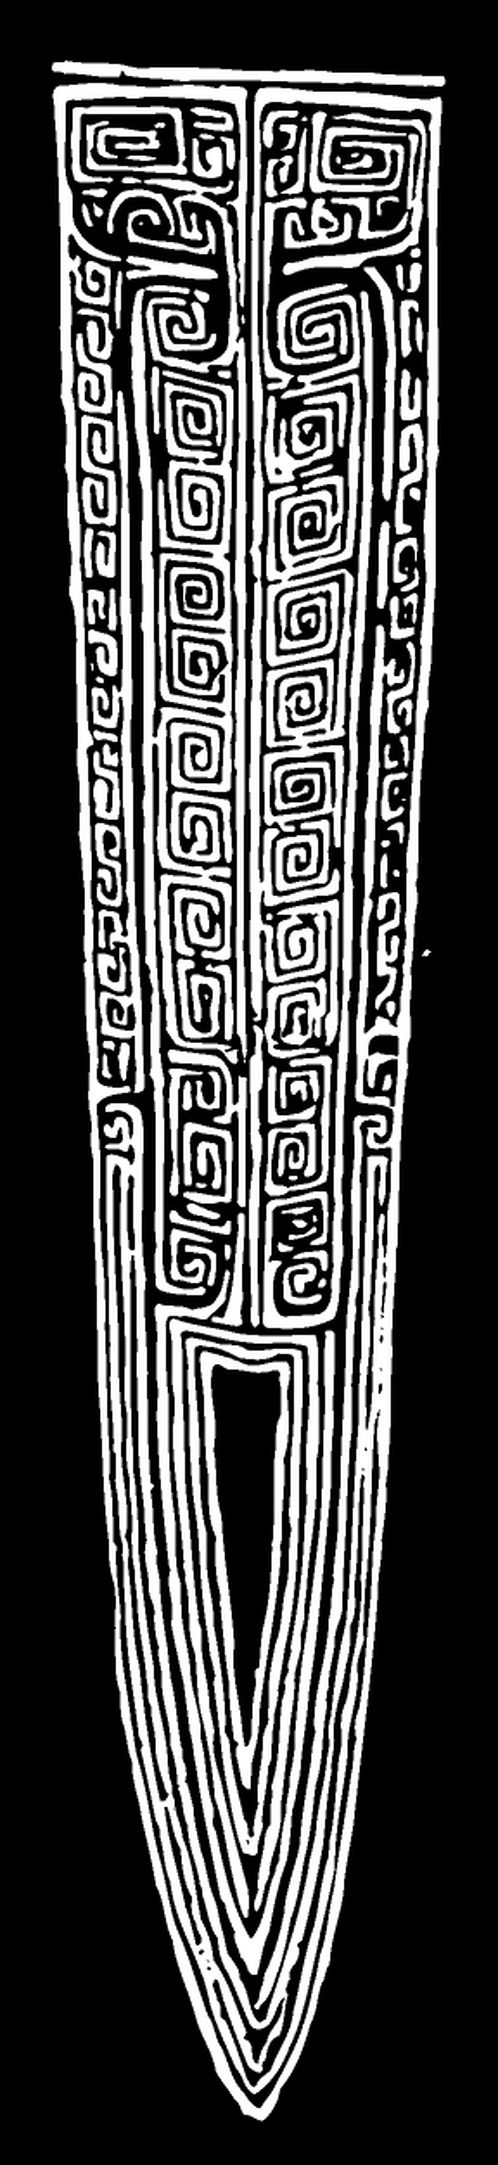 商周 商代晚期青铜器与纹样210601 (288x1252px 299)